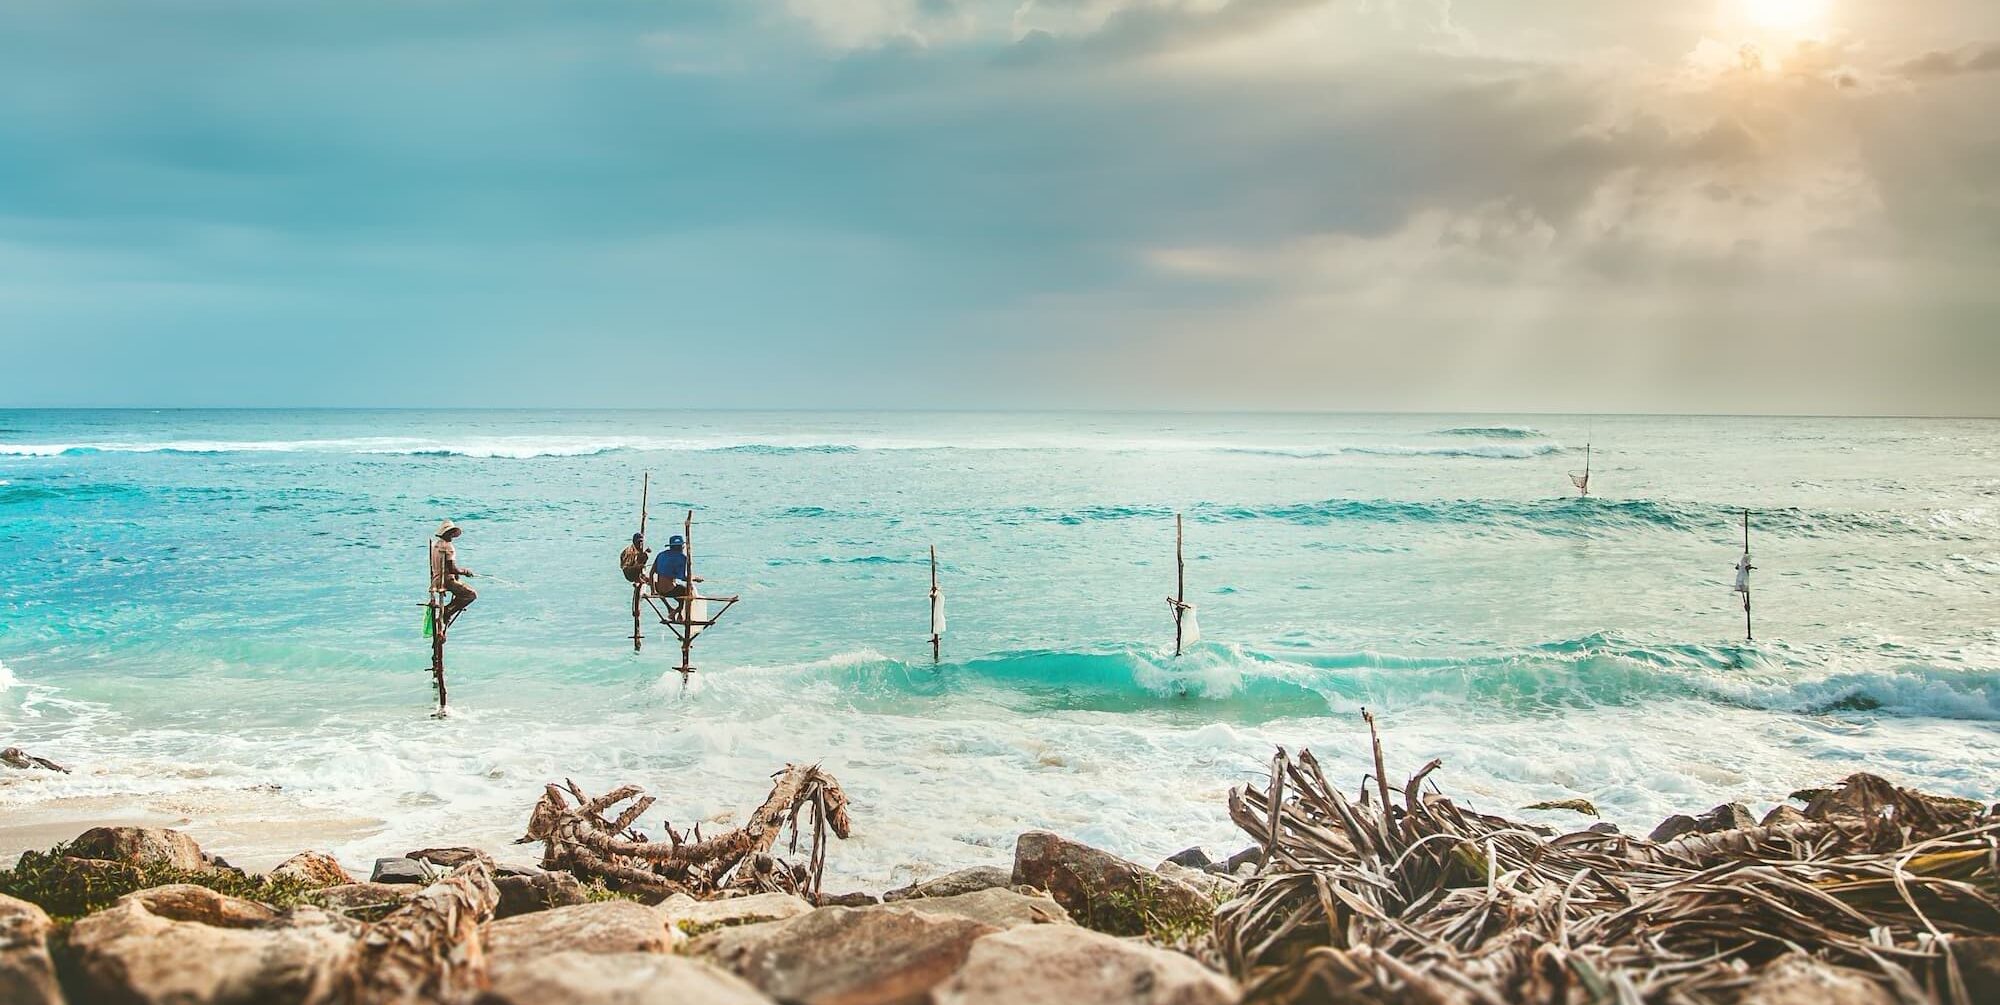 Fisherman on stilts in the sea in Sri Lanka